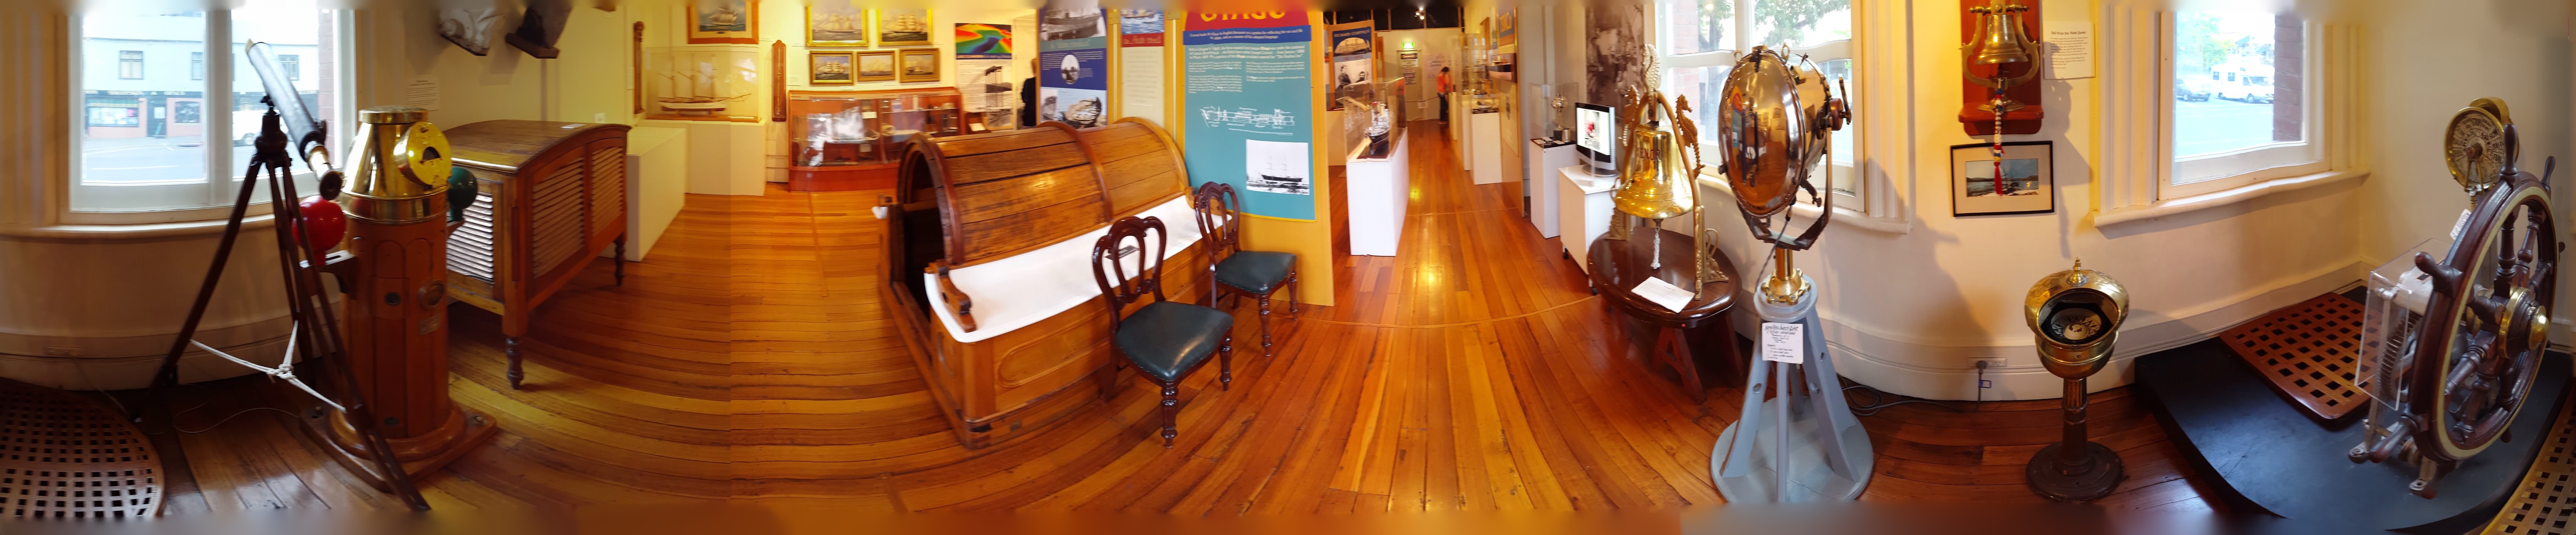 Hobart Maritime Museum 2